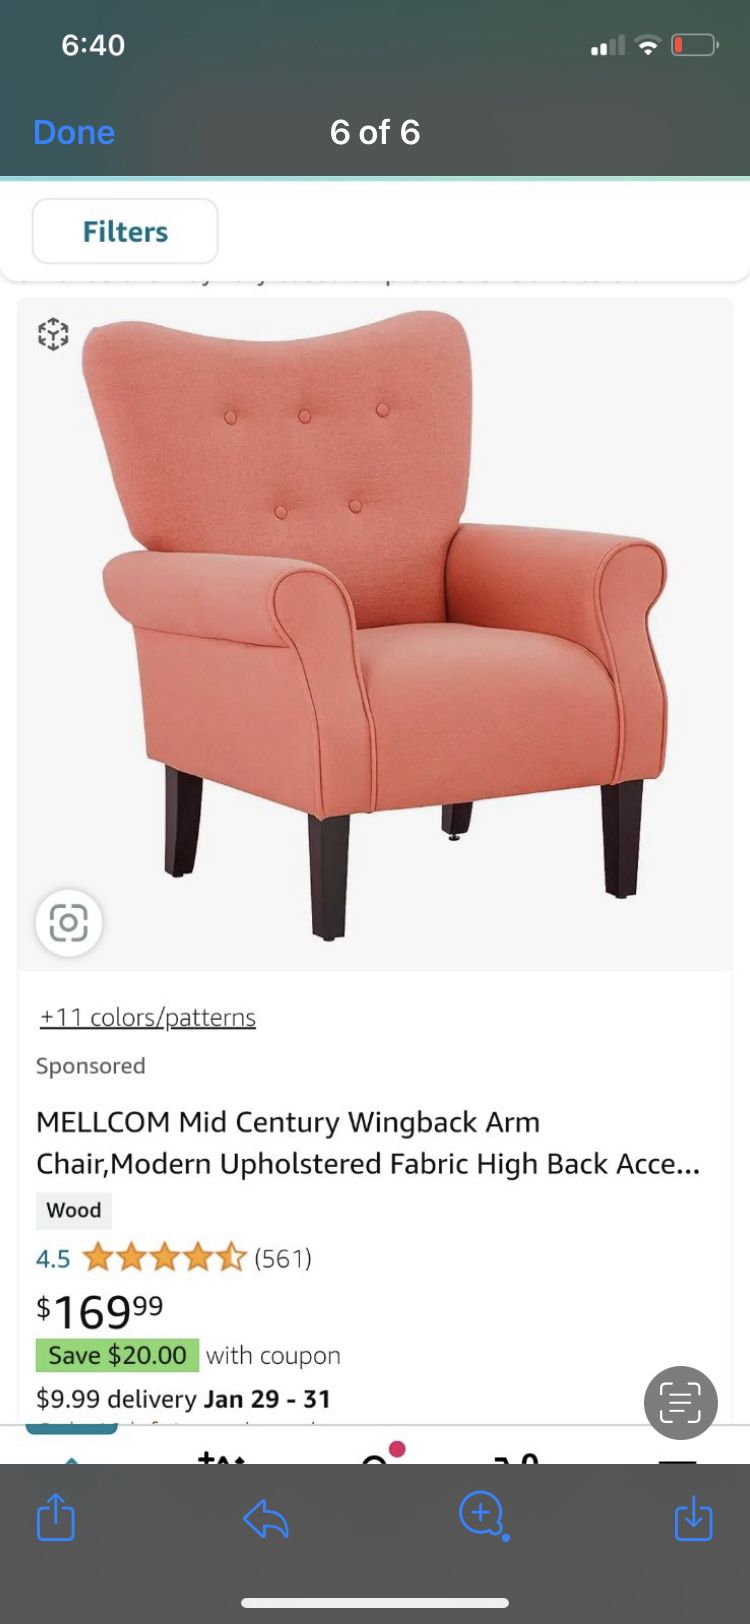 Mellcom Mid Century Wingback Arm Chair 